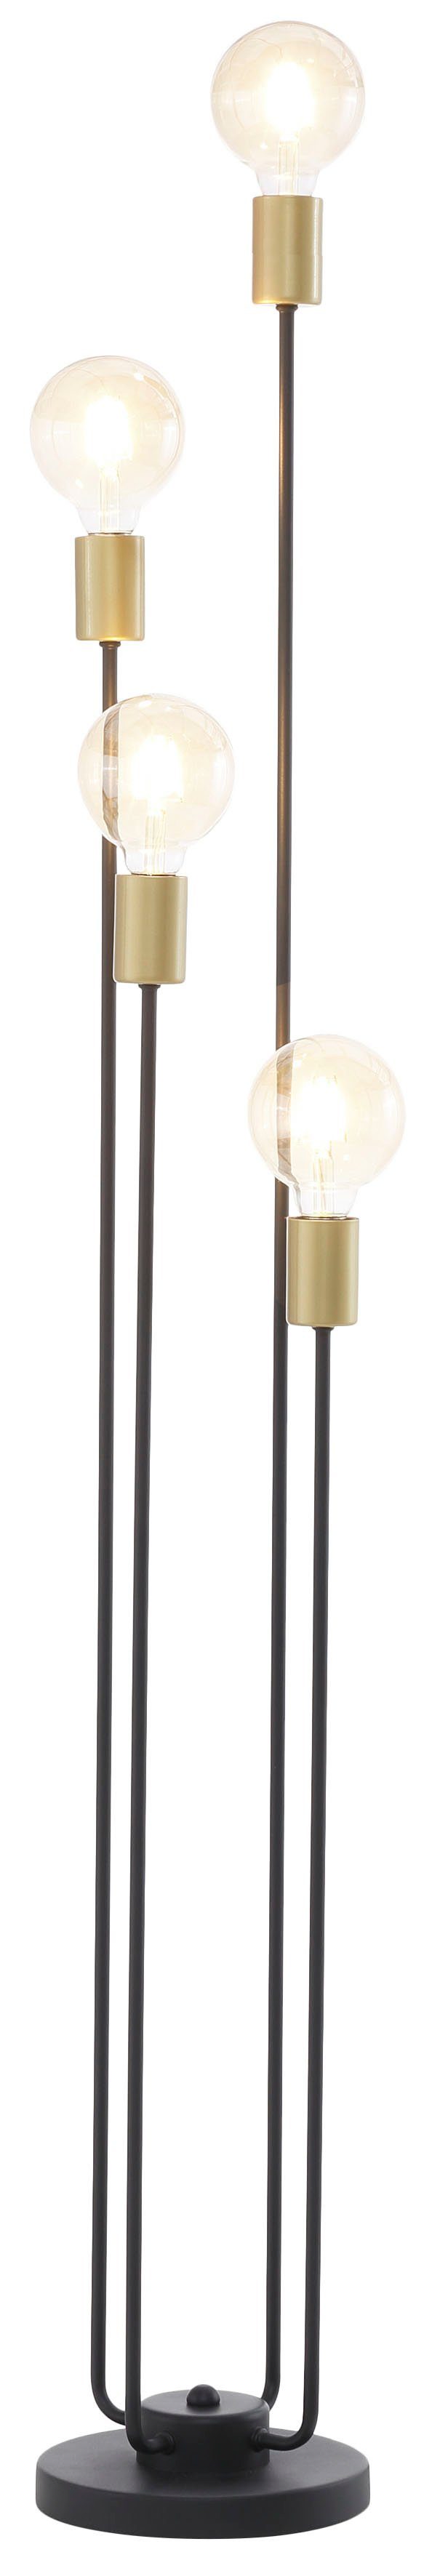 Leonique Stehlampe »Jarla«, Stehleuchte mit goldfarbenen Fassungen, Höhe  137 cm online kaufen | OTTO